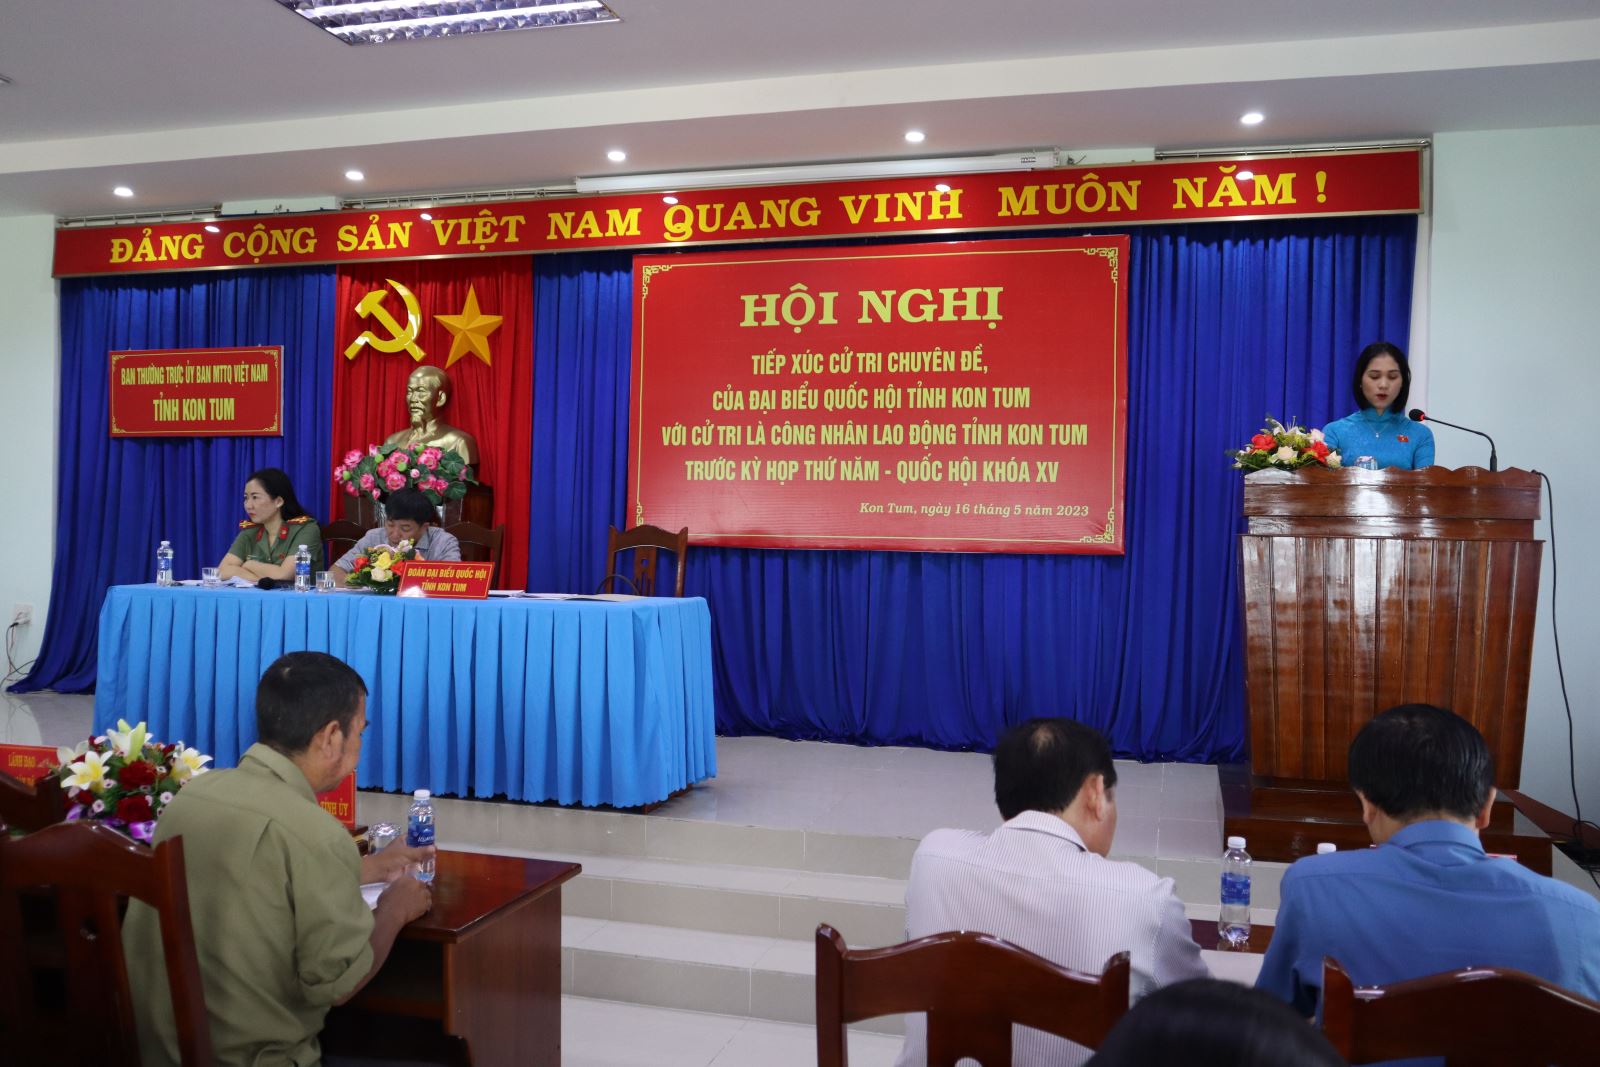 Đoàn đại biểu Quốc hội tỉnh Kon Tum tiếp xúc cử tri chuyên đề với công nhân lao động trước kỳ họp thứ Năm, Quốc hội khóa XV.